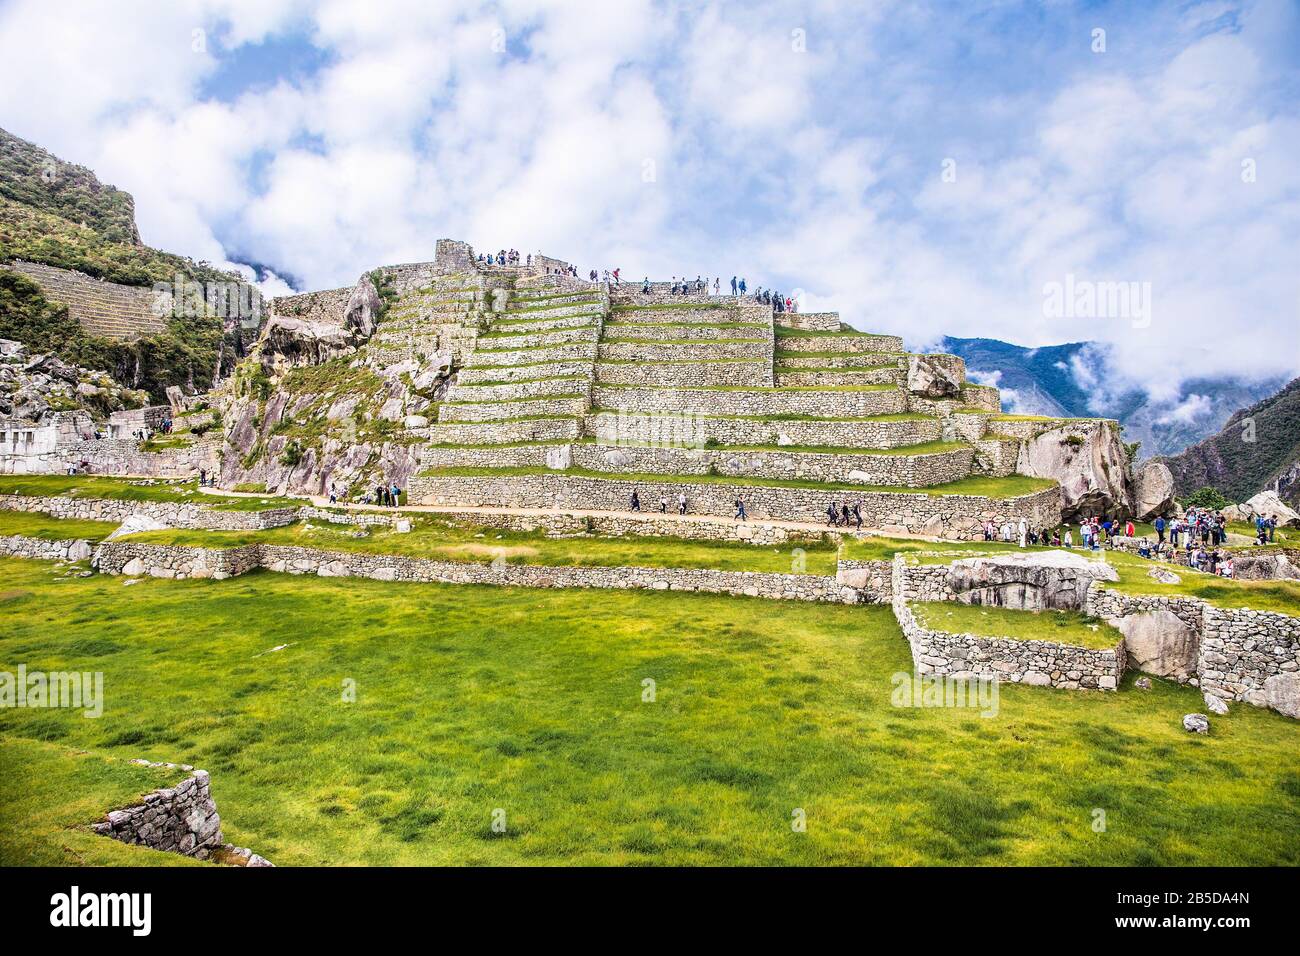 Vue panoramique sur l'ancienne cité de Machu Picchu au Pérou. L'Amérique du Sud. Banque D'Images